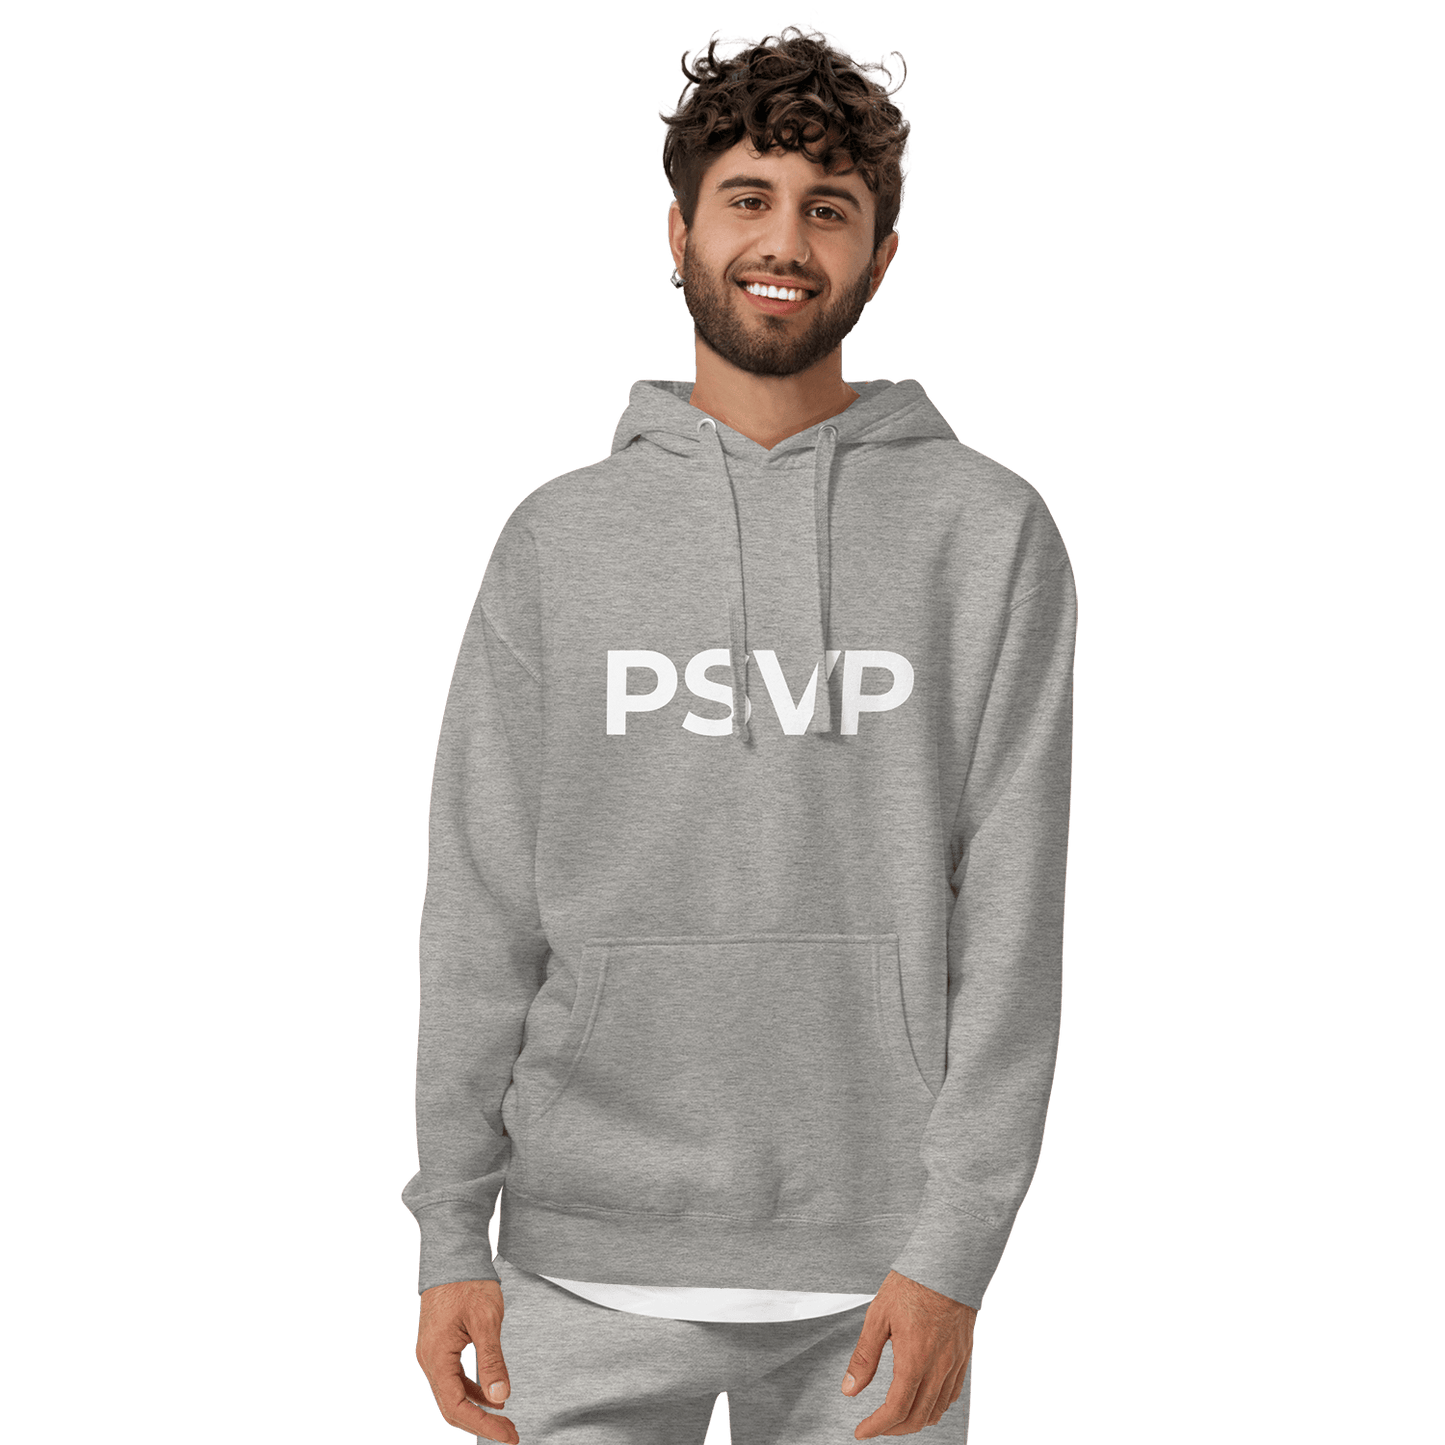 Comfy Carbon Grey Fleece Sweatpants - PSVP | Sweatpants | PARADIS SVP